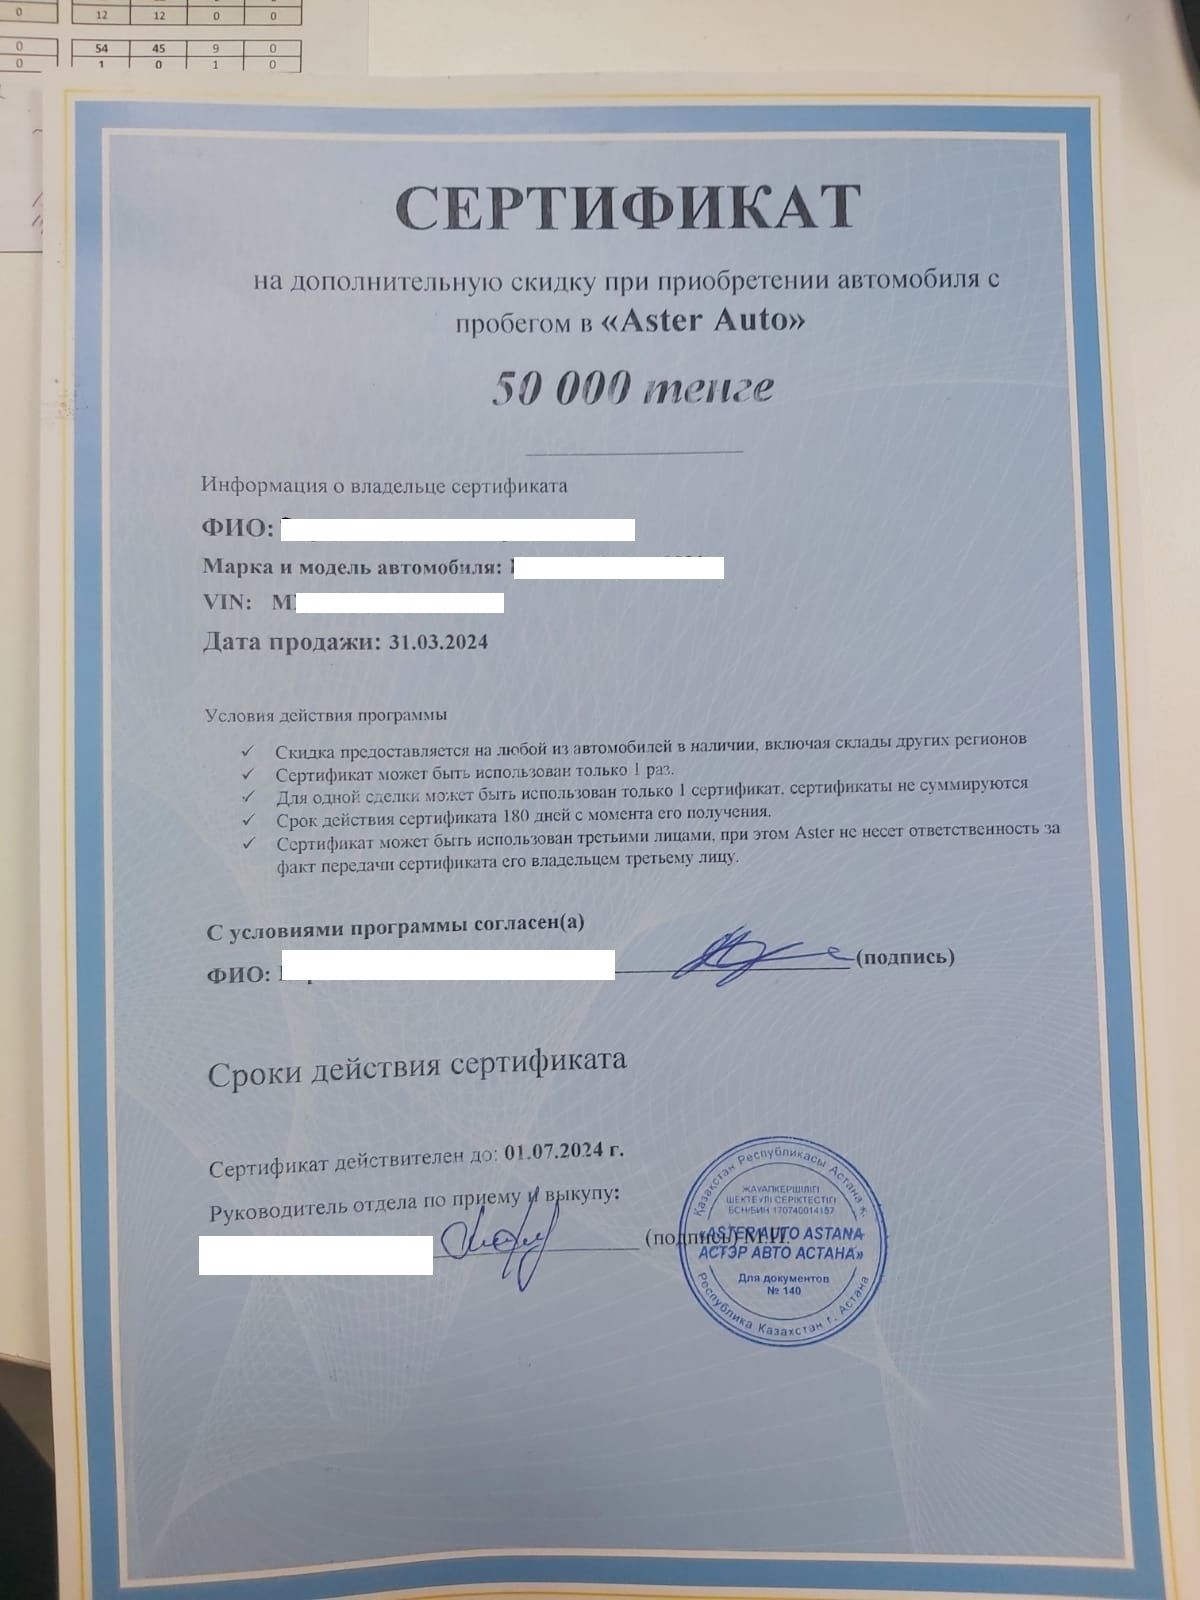 Сертификат на покупку машины на 50 тысяч